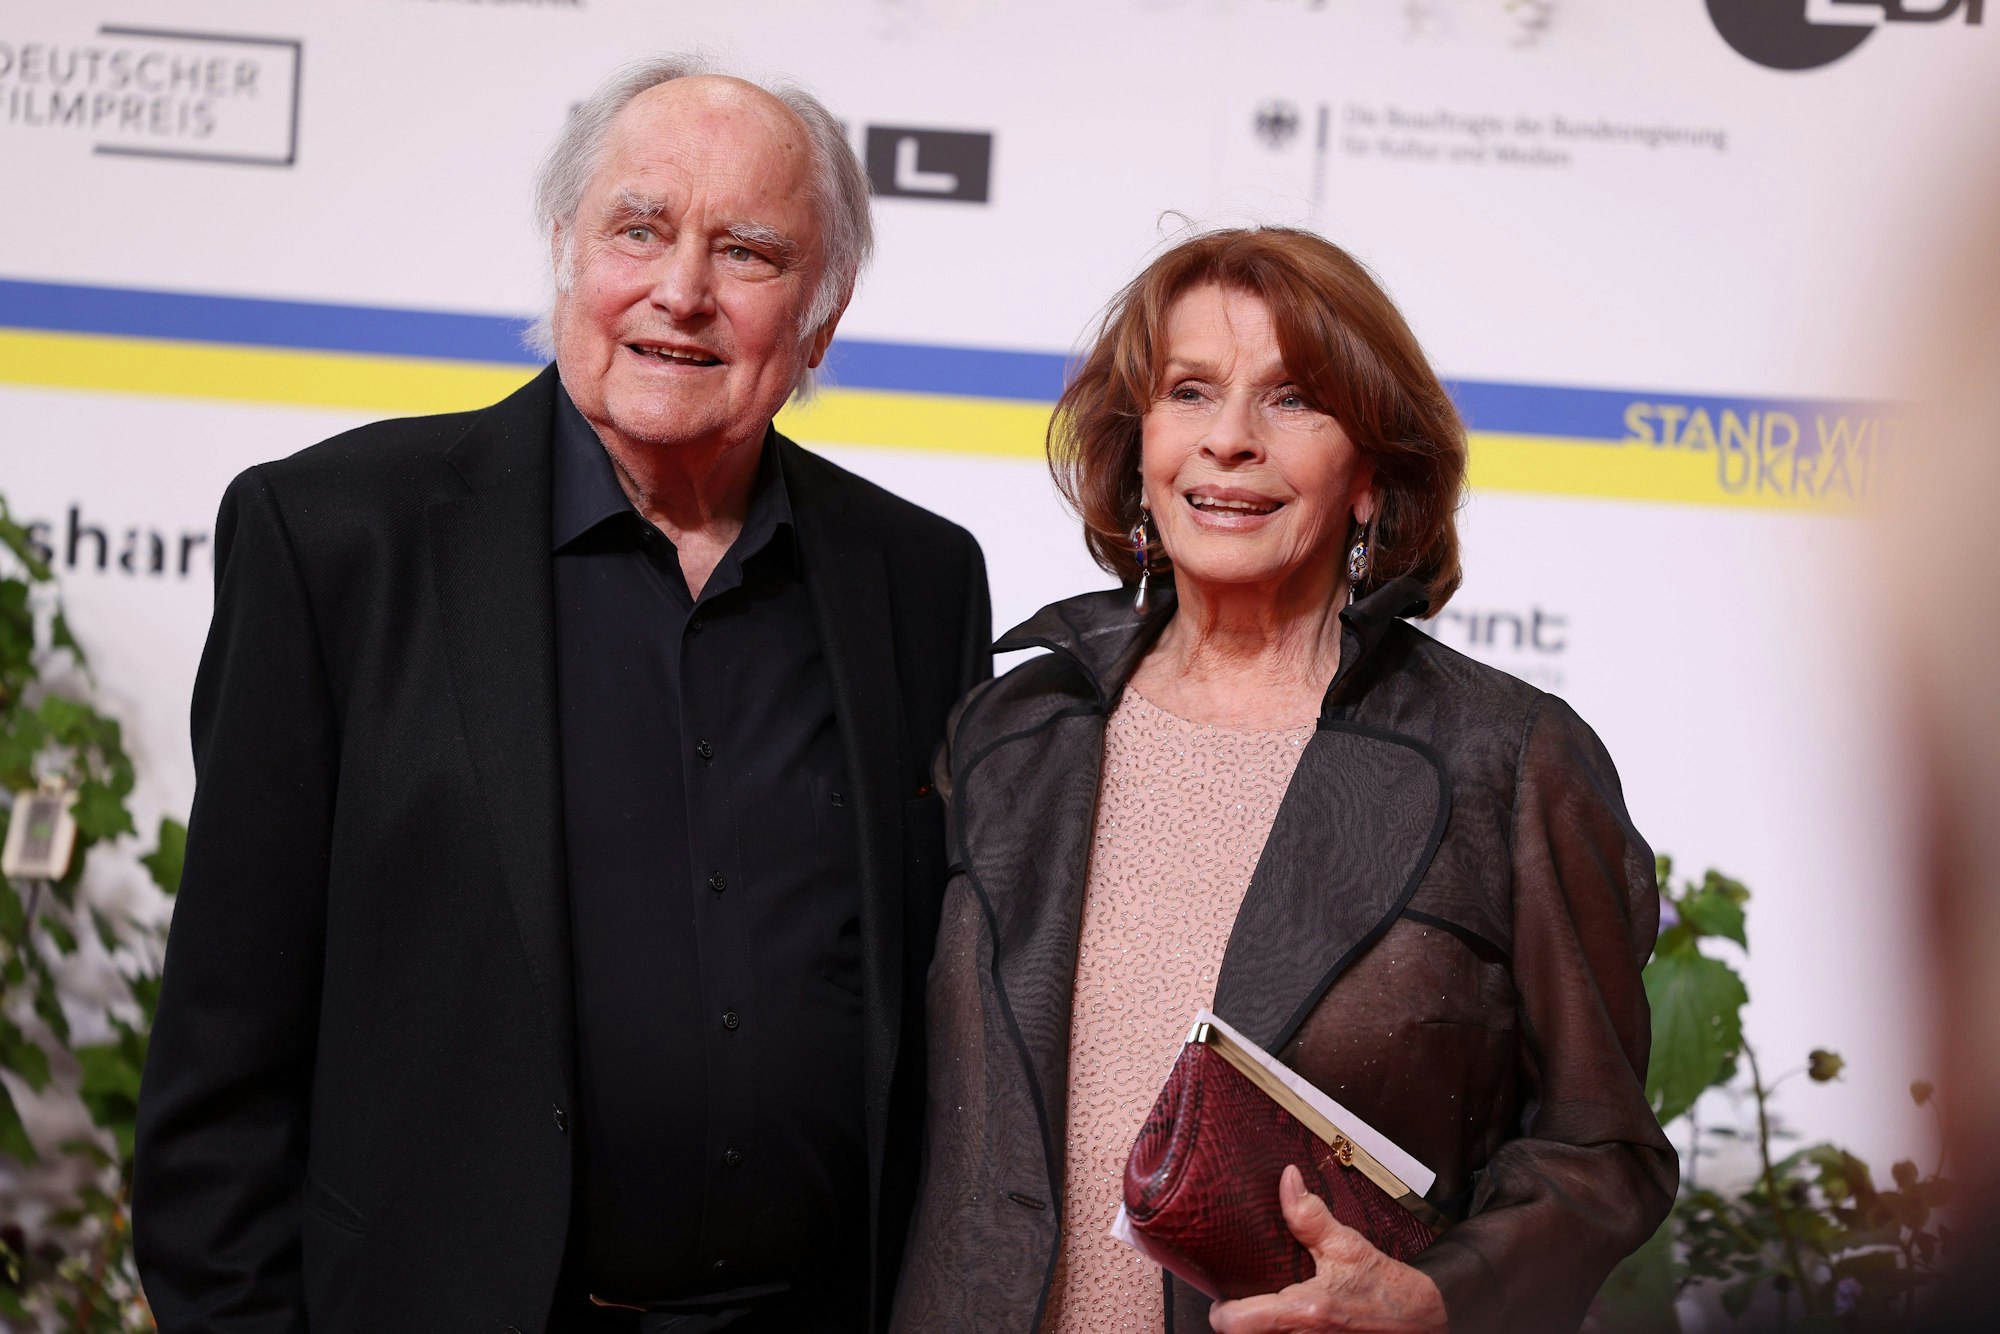 Schauspielerin Senta Berger und ihr Ehemann, Regisseur Michael Verhoeven, kommen zur Verleihung des Deutschen Filmpreises.